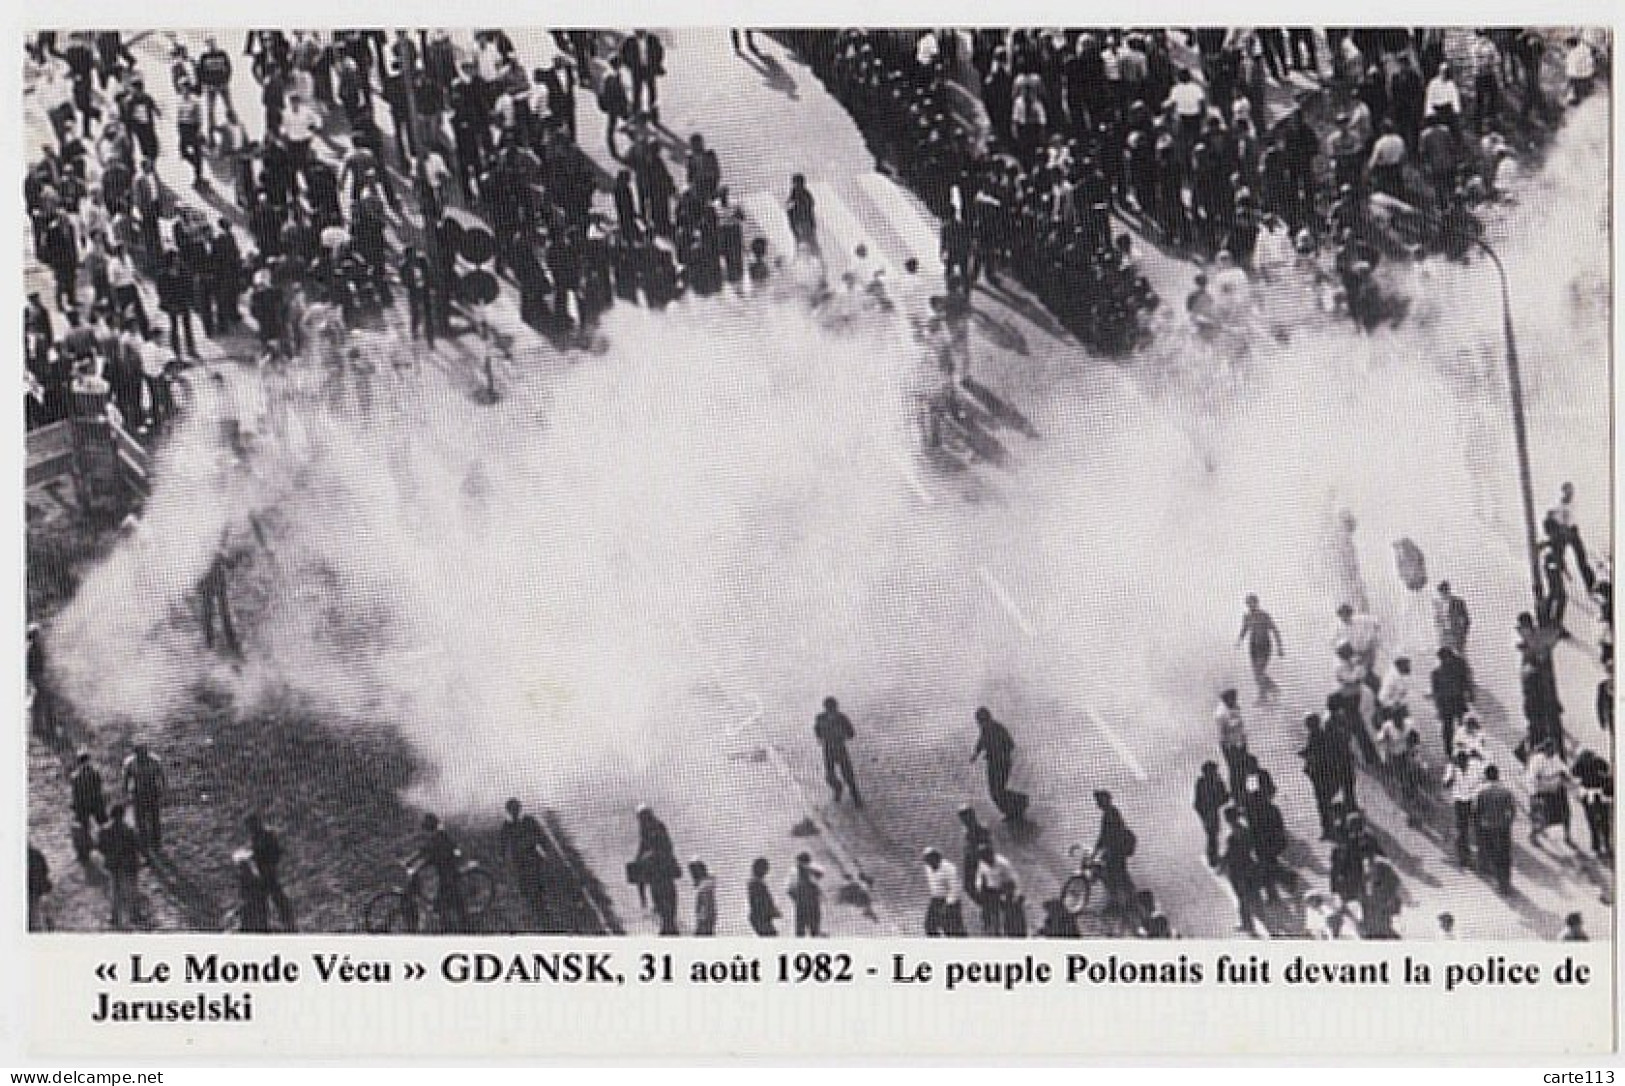 0 - F21841CPM - LE MONDE VECU - Série 3D - 00033 -  31/8/82 -GDANSK - Le Peuple Polonais Devant La Police De Jaruselski - Demonstrations